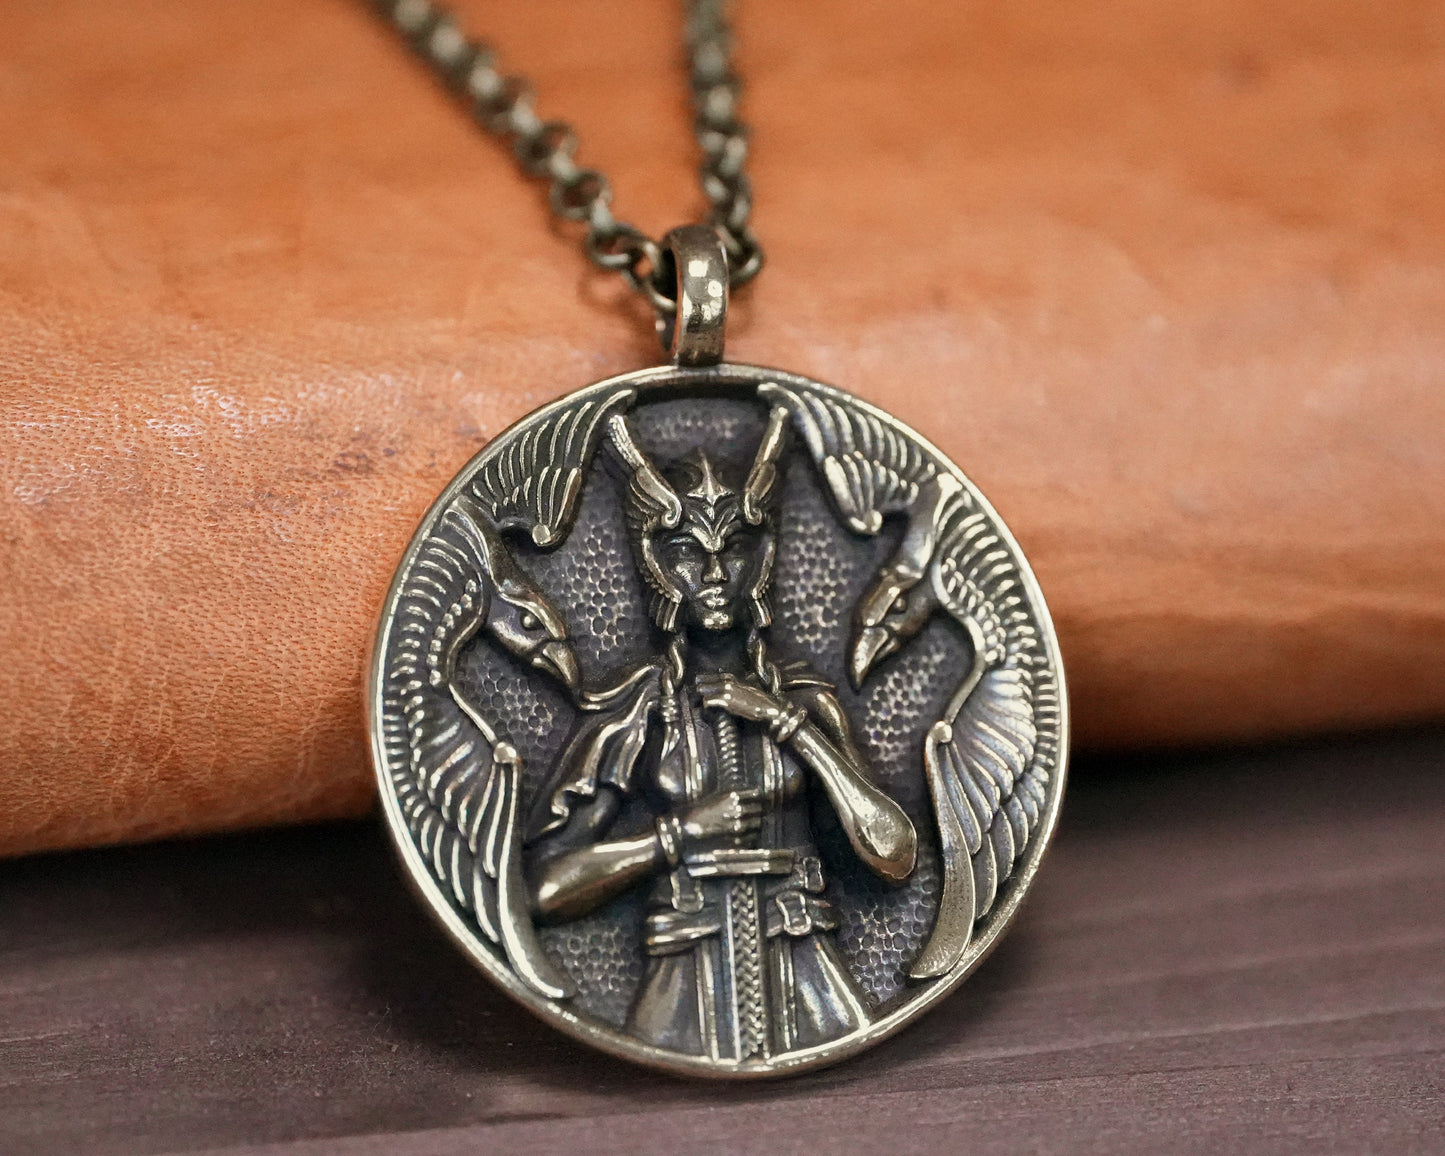 Halskette mit Schutzgöttin der Wikinger, Freya, Walküre, Schildmaid – nordischer Odin, Raben, Huginn, Muninn – Schutzanhänger mit 56 cm langer Kette